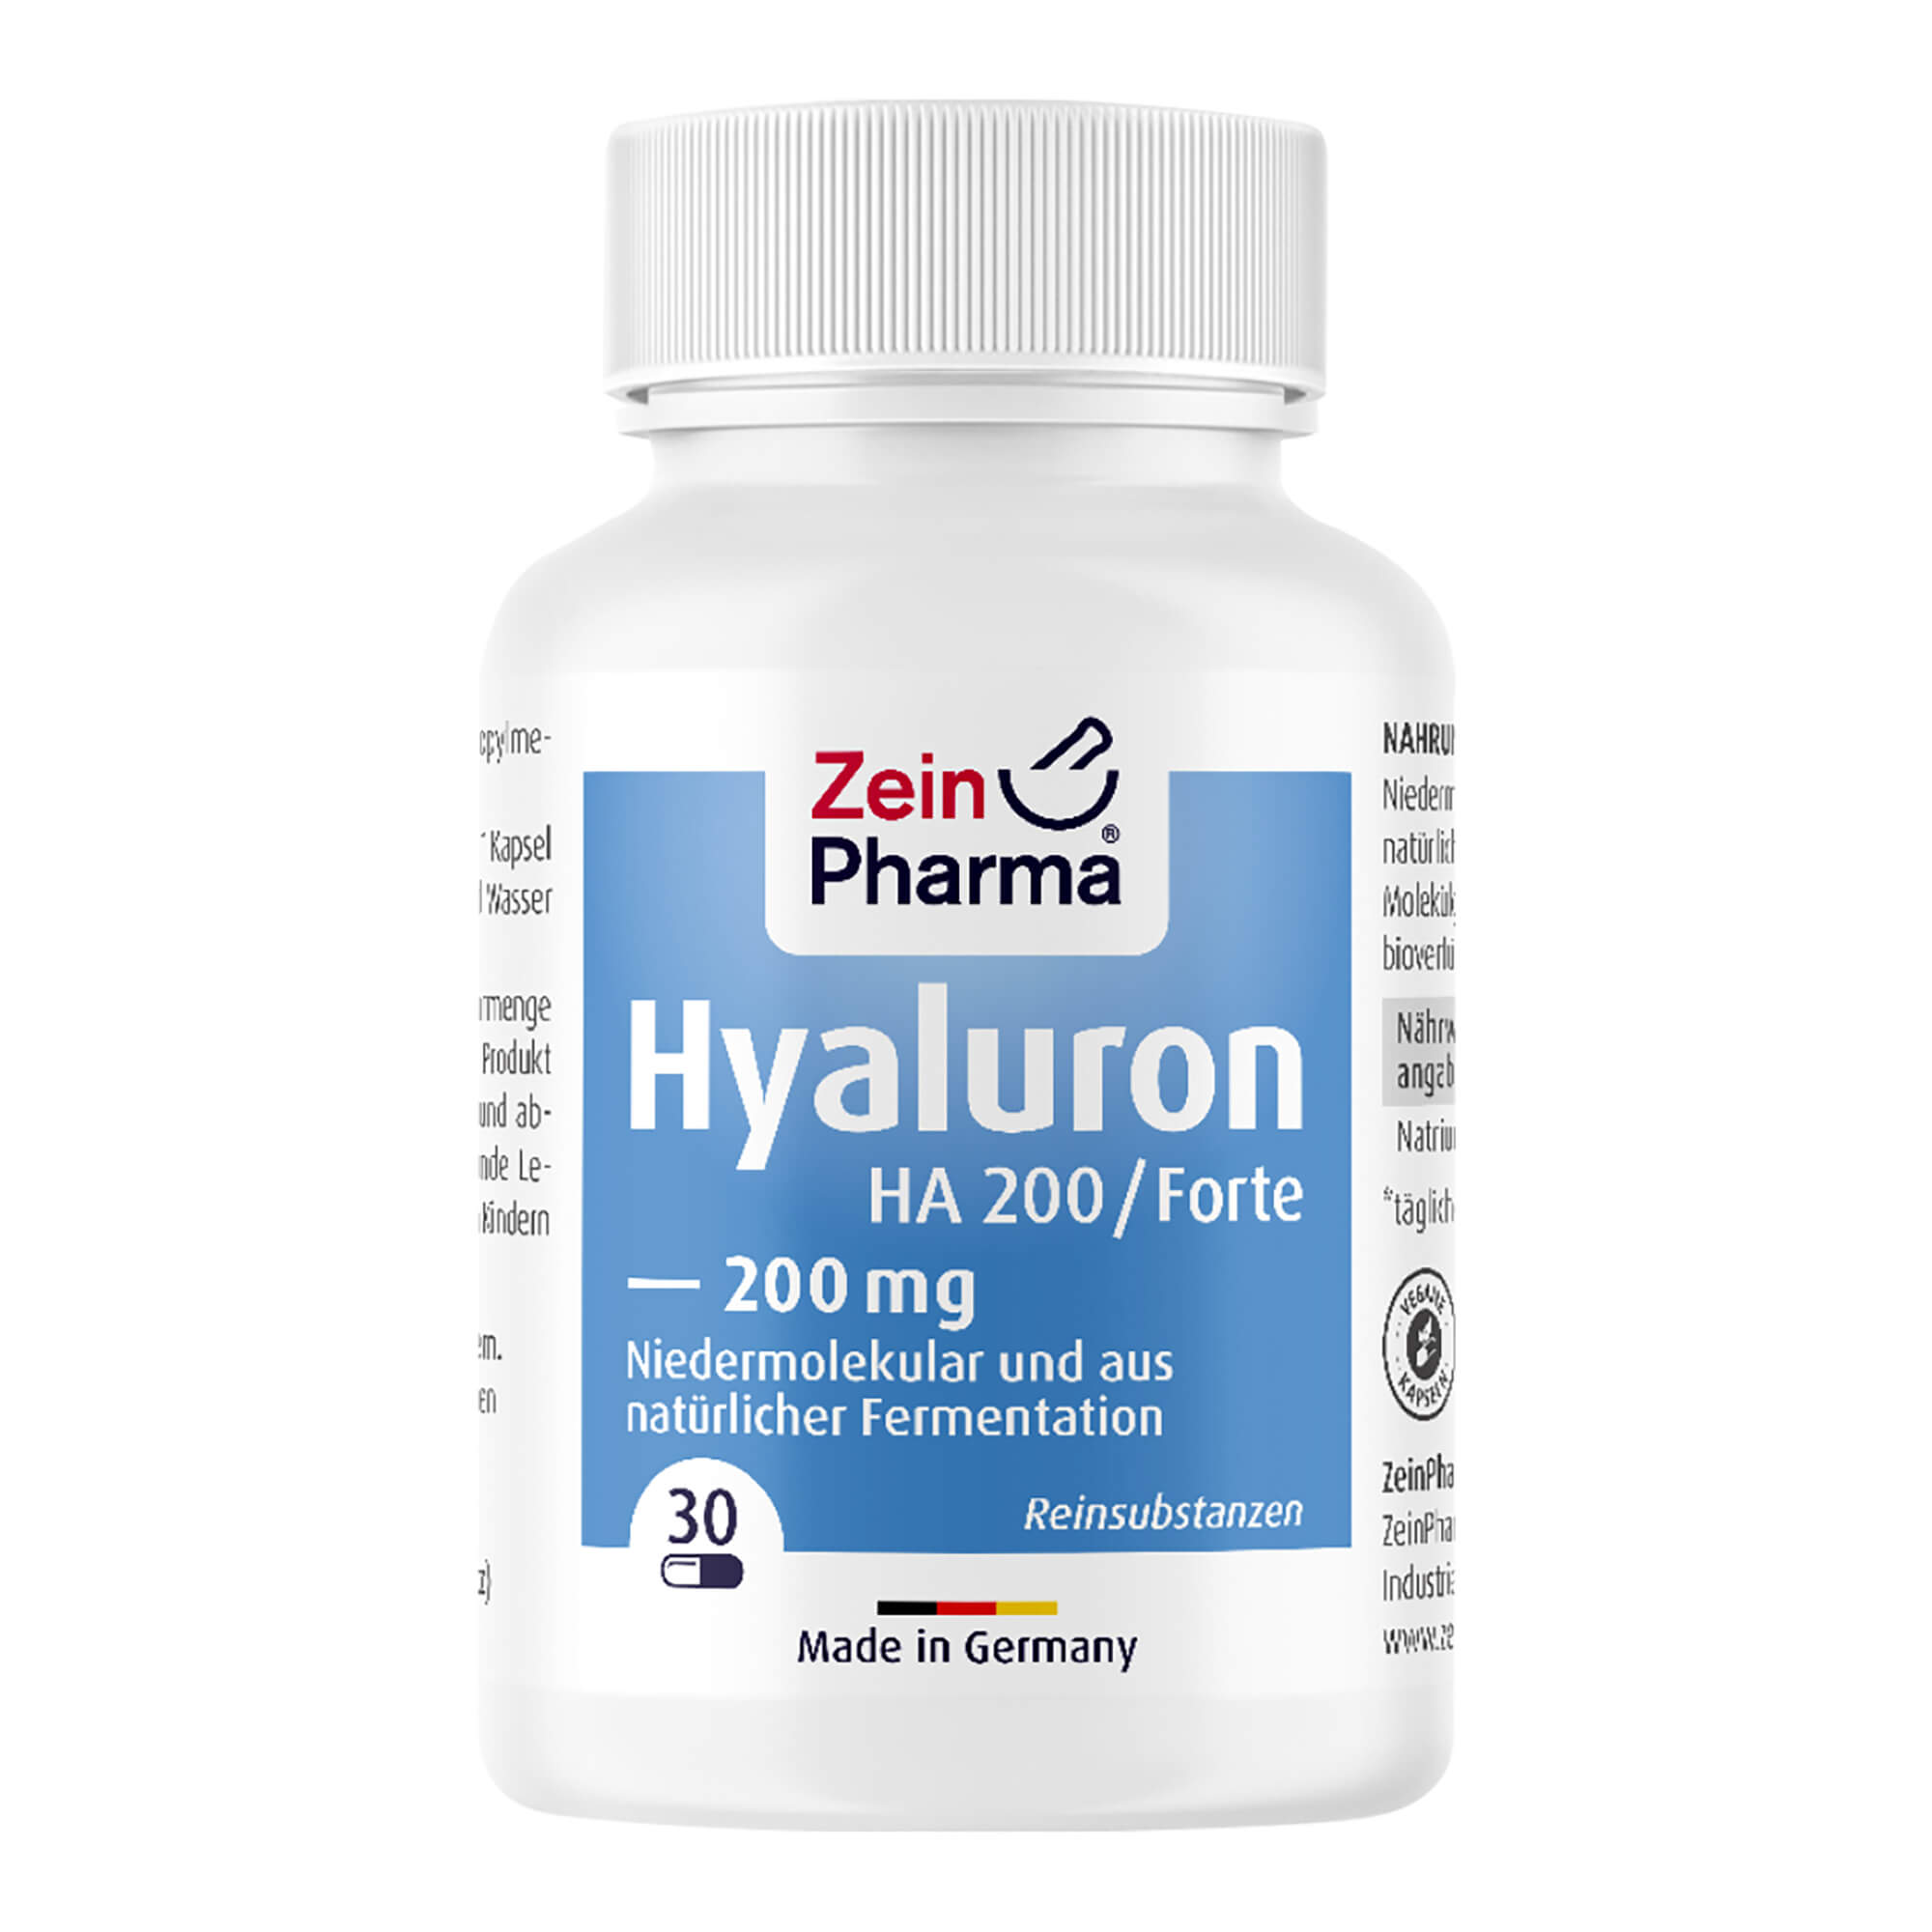 Nahrungsergänzungsmittel mit niedermolekularer Hyaluronsäure aus natürlicher Fermentation.